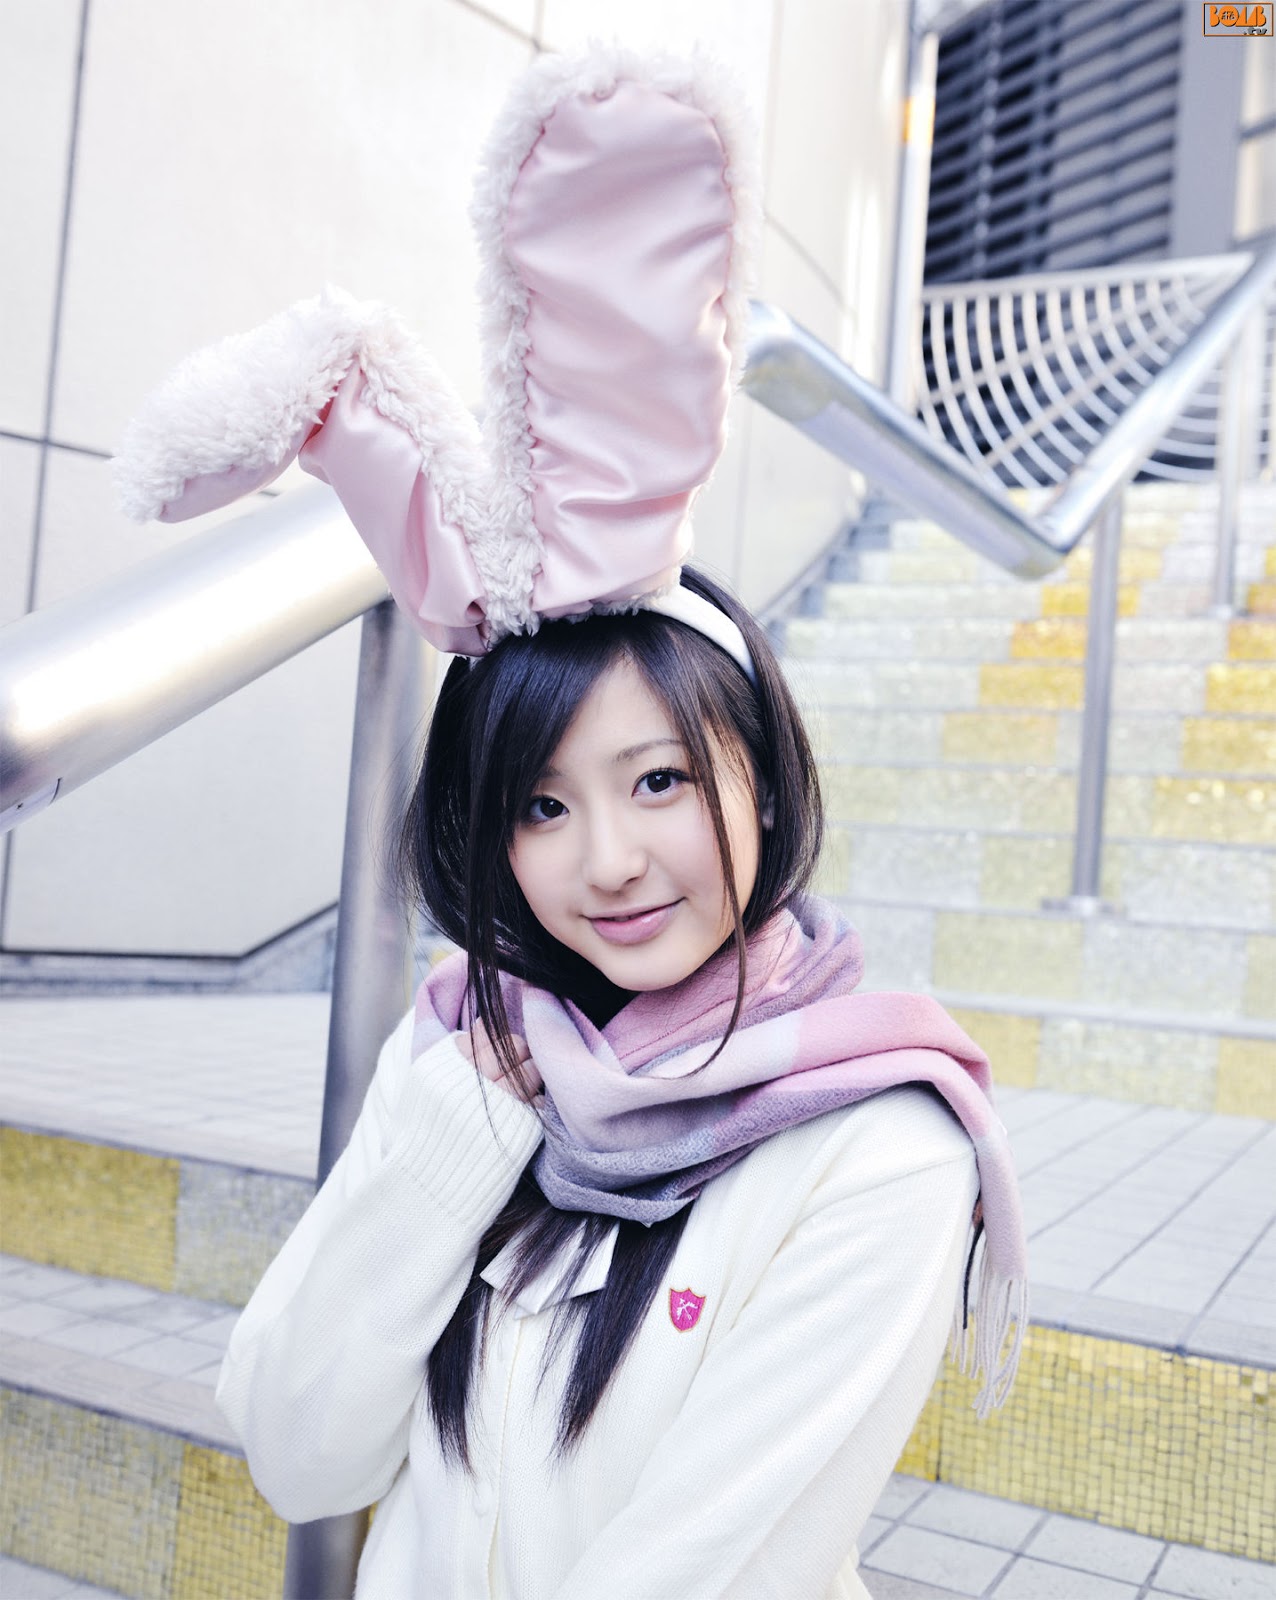 Красивая японка в новогоднем костюме и кроличьими ушками.